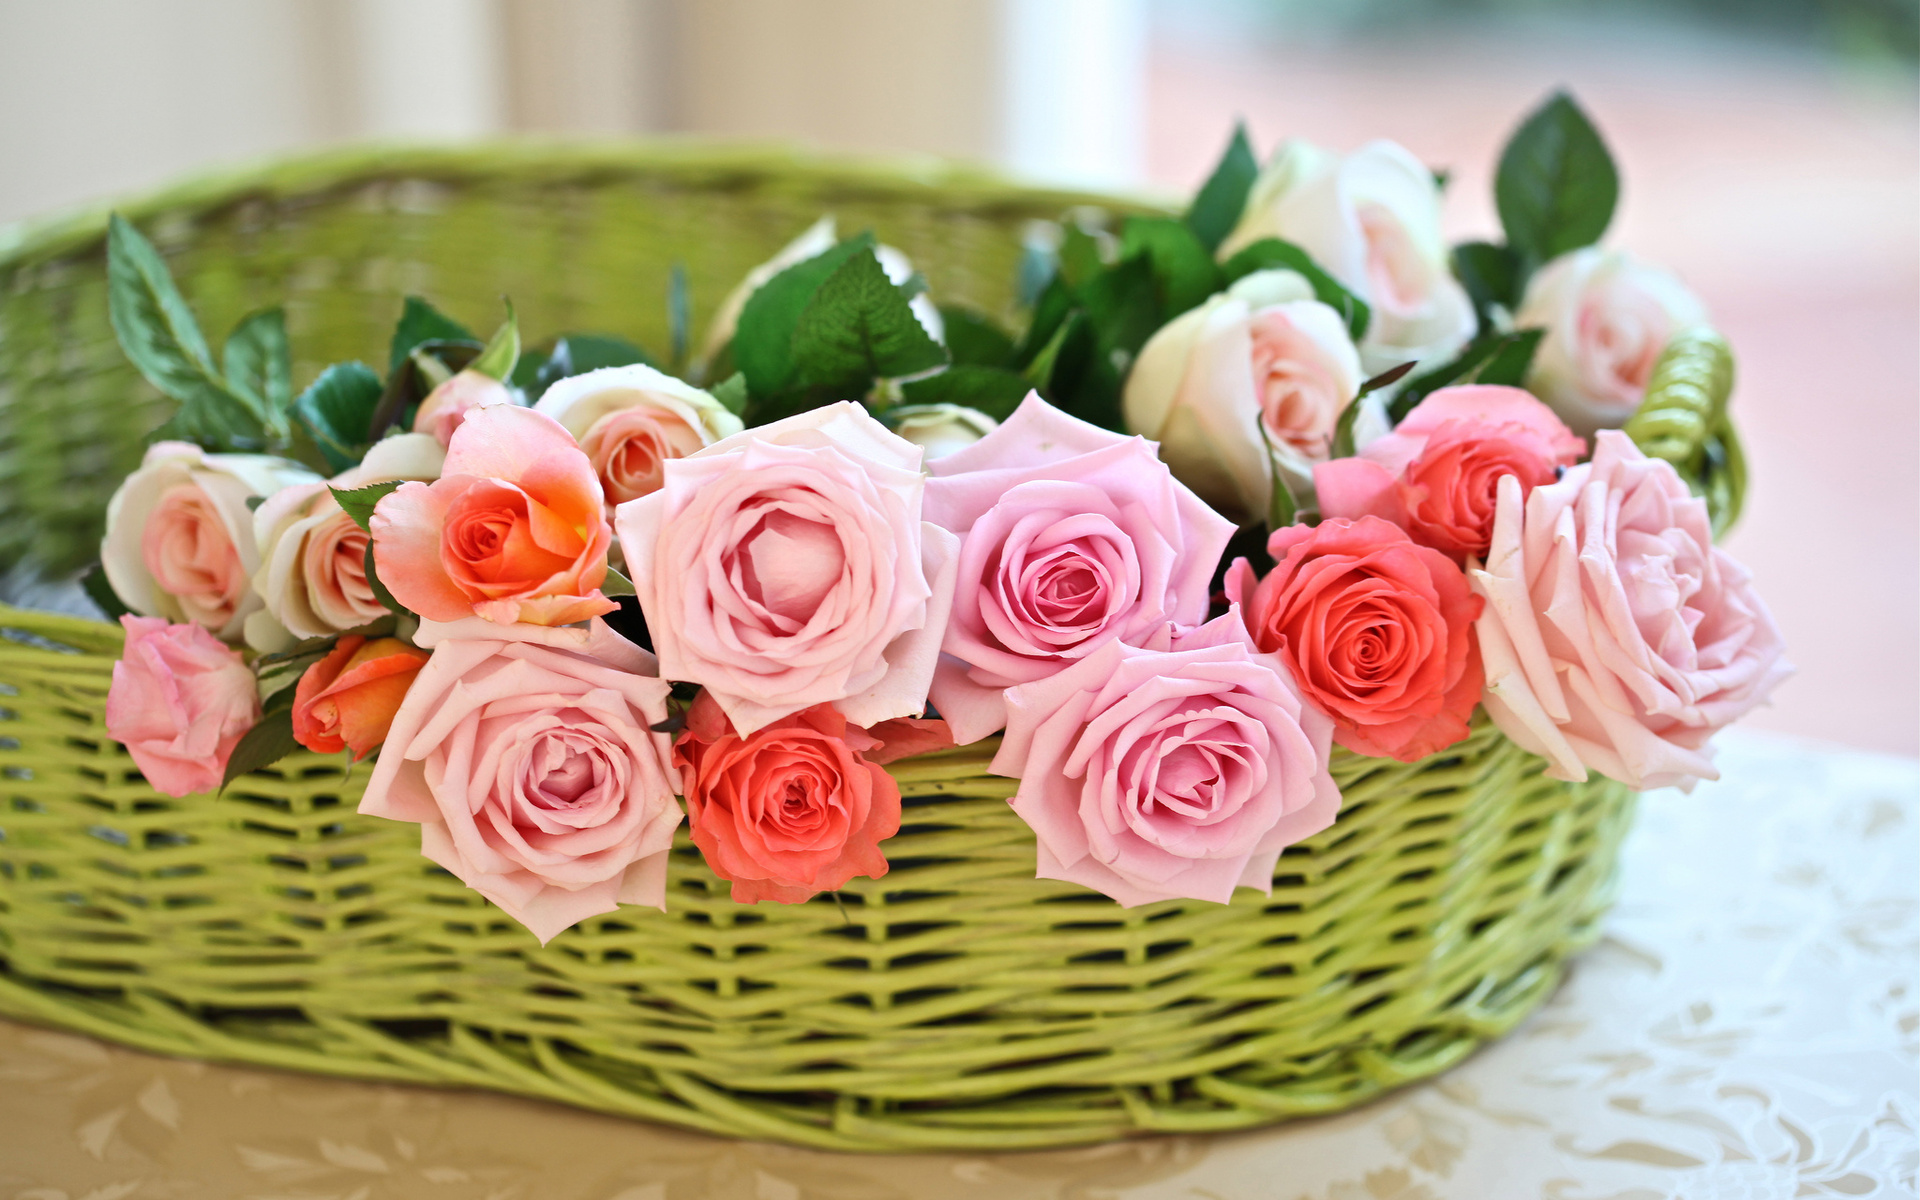 Bó hoa luôn là món quà tuyệt vời để tặng người thân yêu của bạn. Từ những bông hoa đơn giản cho đến những cành hoa phong phú, chúng đều có thể mang đến nhiều cảm xúc và cảm giác tươi mới. Hãy xem bức ảnh về bó hoa này để trải nghiệm cảm giác tươi mới và đầy sắc màu.